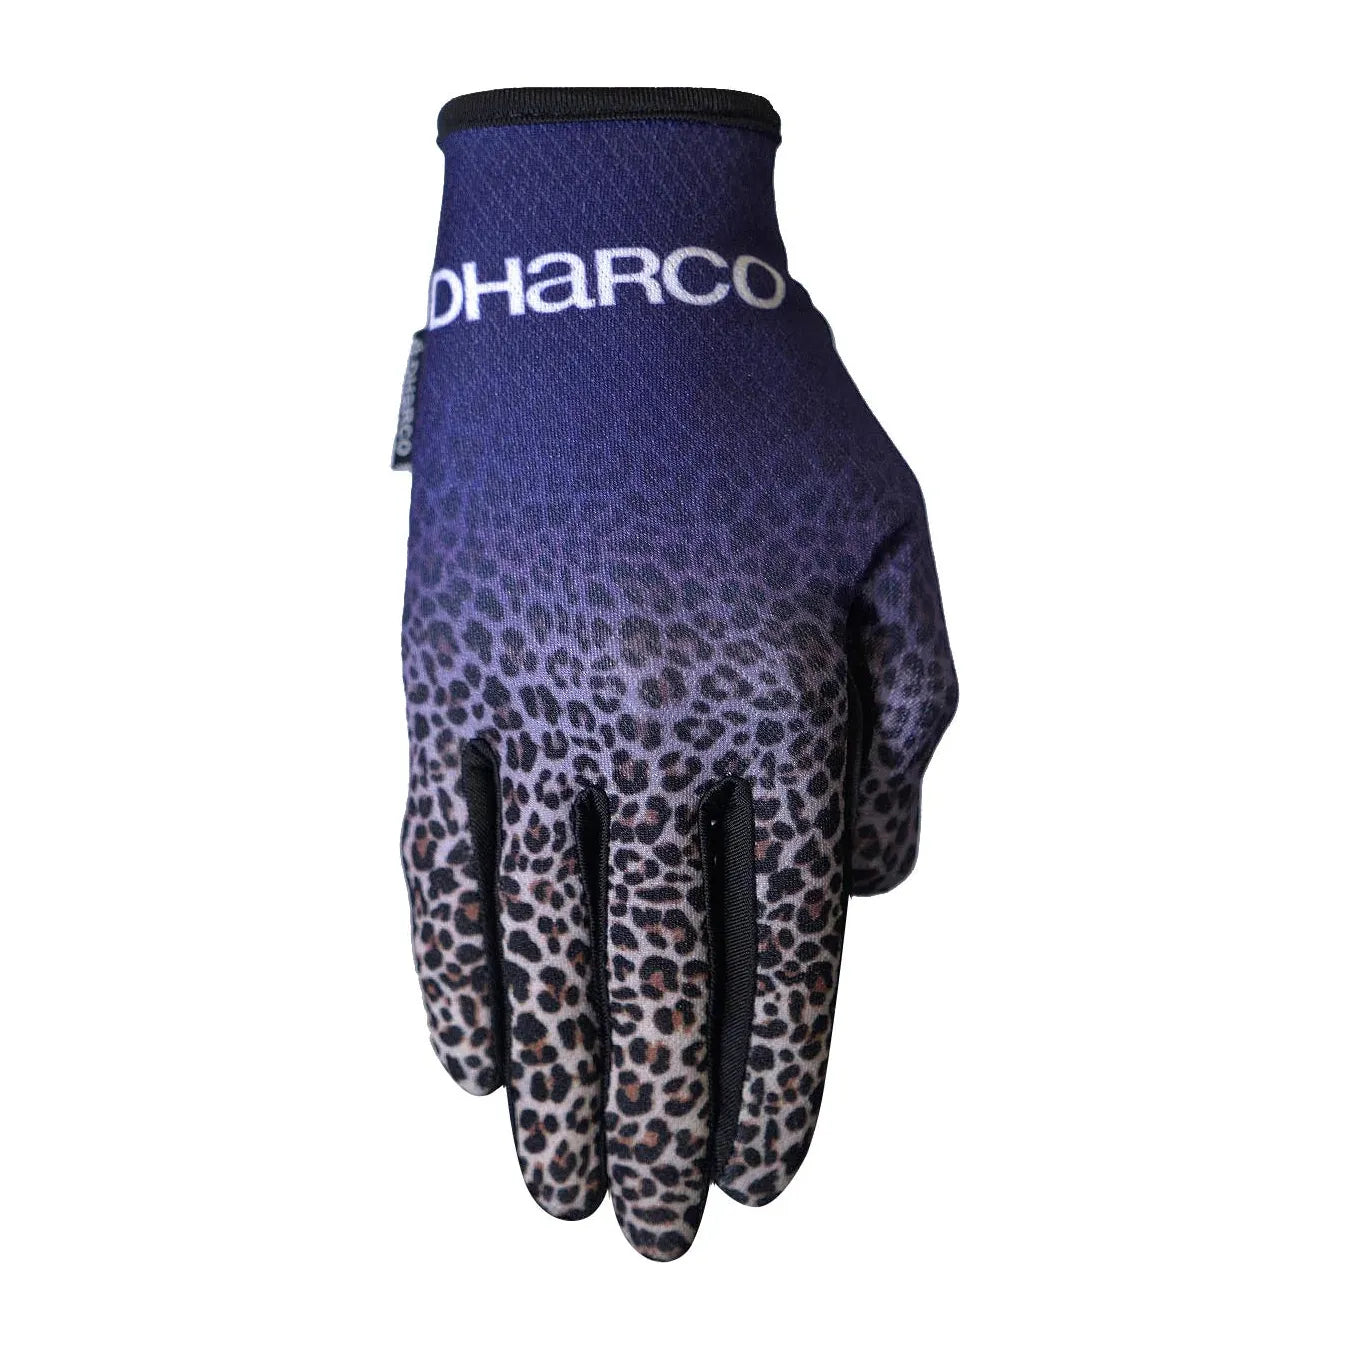 DHaRCO Women's Race Gloves - L - Purple Leopard